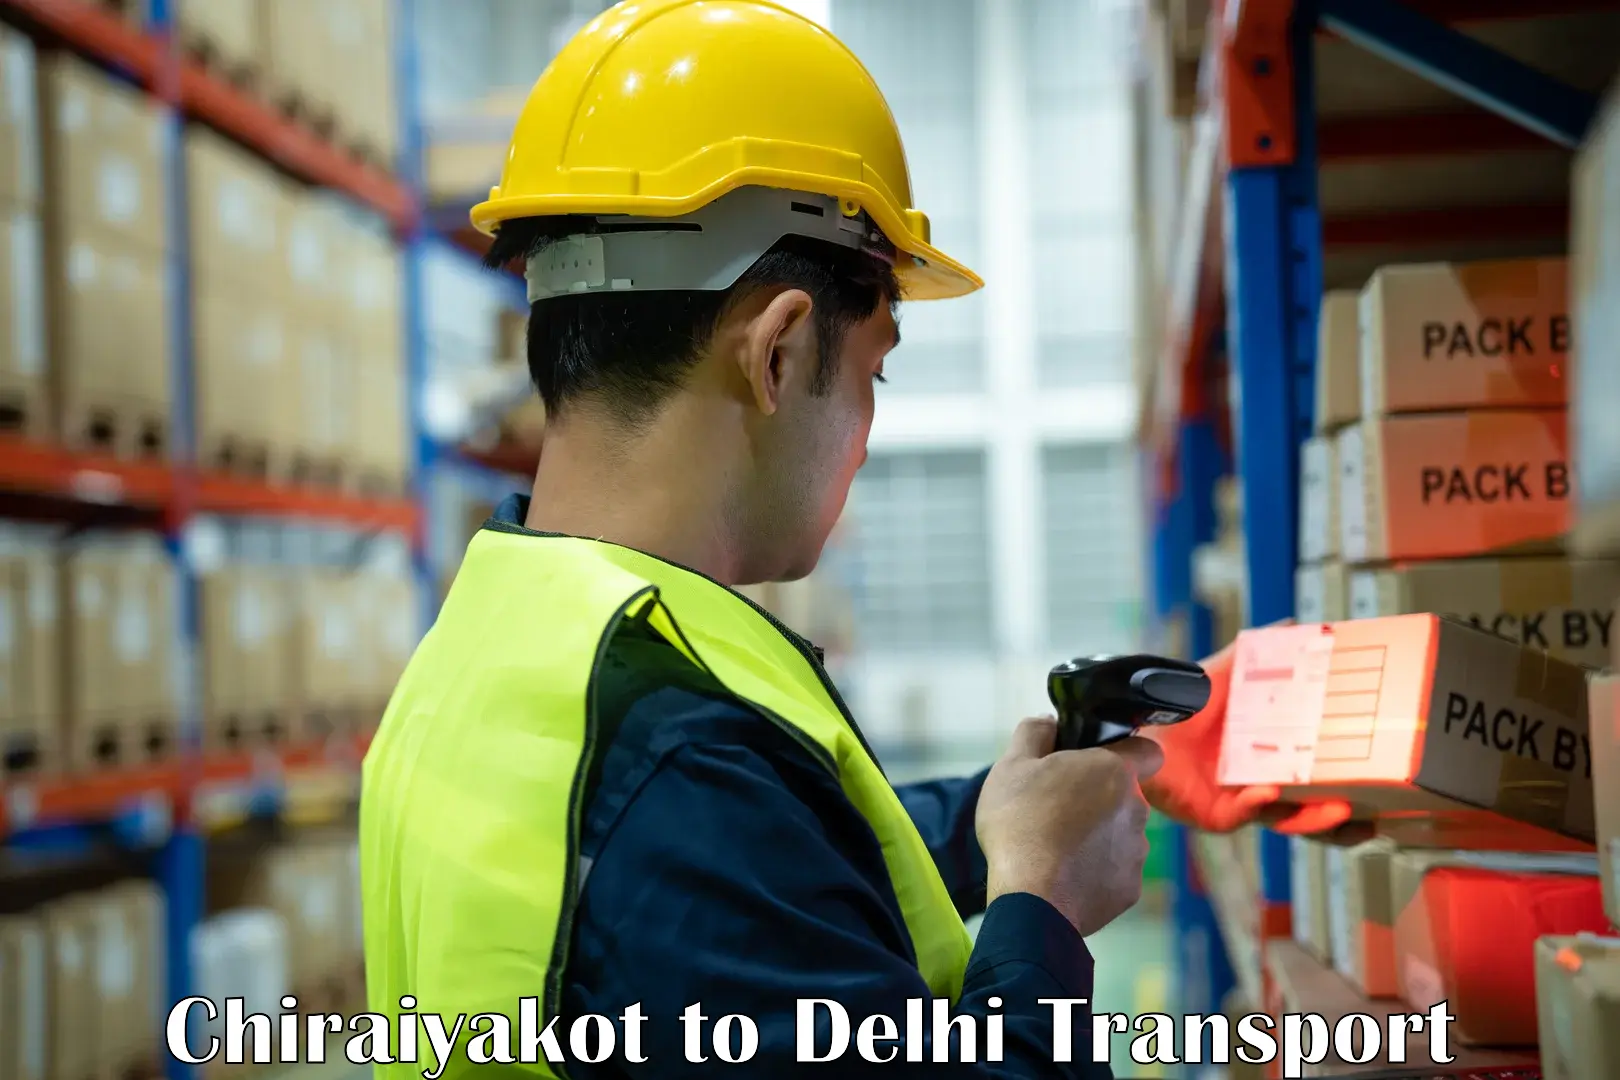 India truck logistics services Chiraiyakot to Delhi